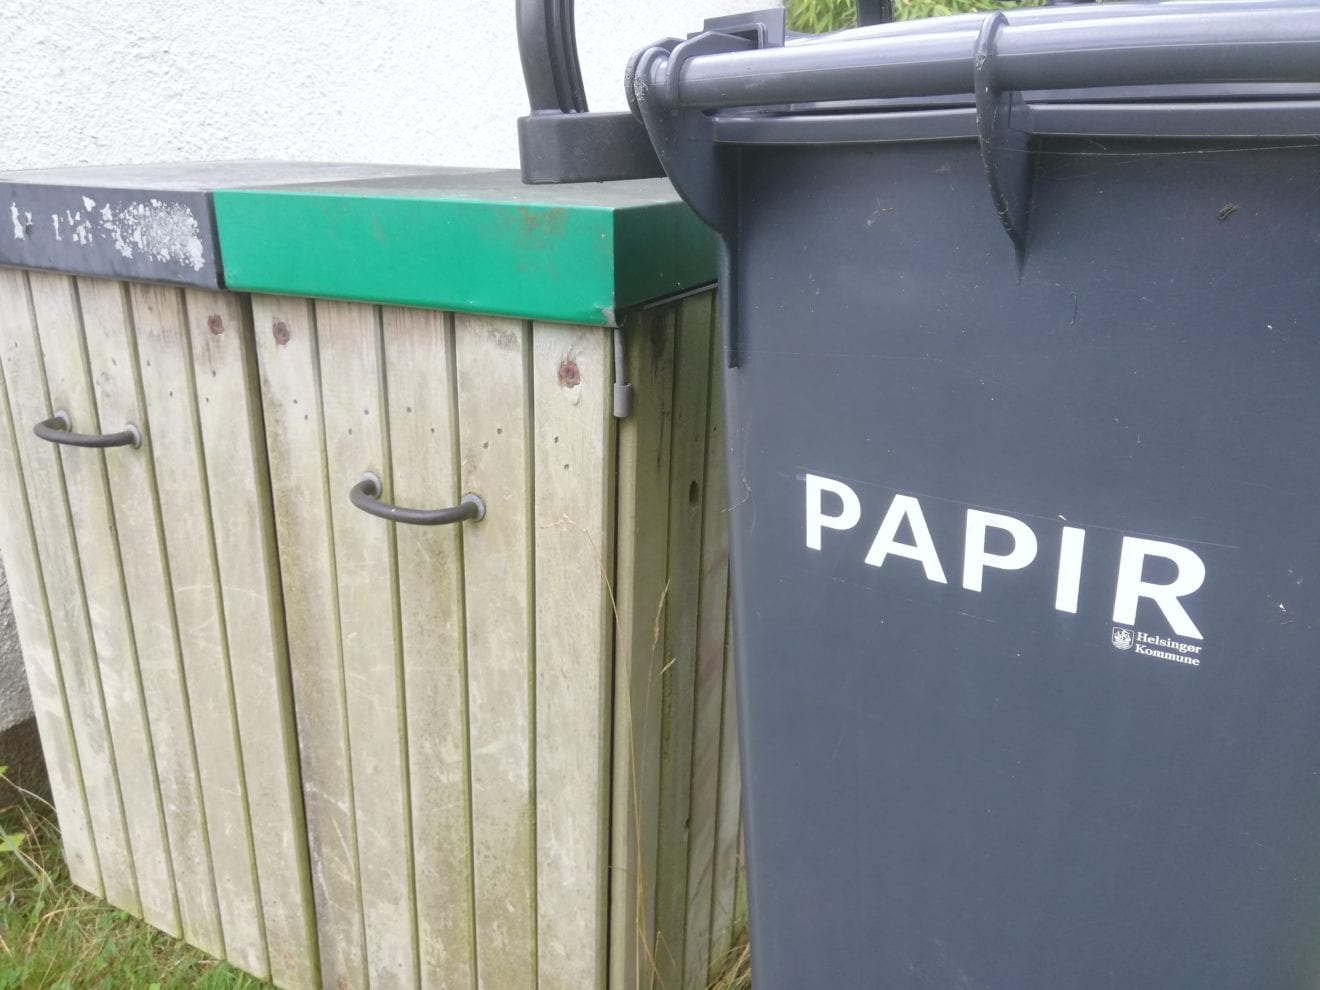 Flere husstande i Helsingør Kommune begynder at sortere affald